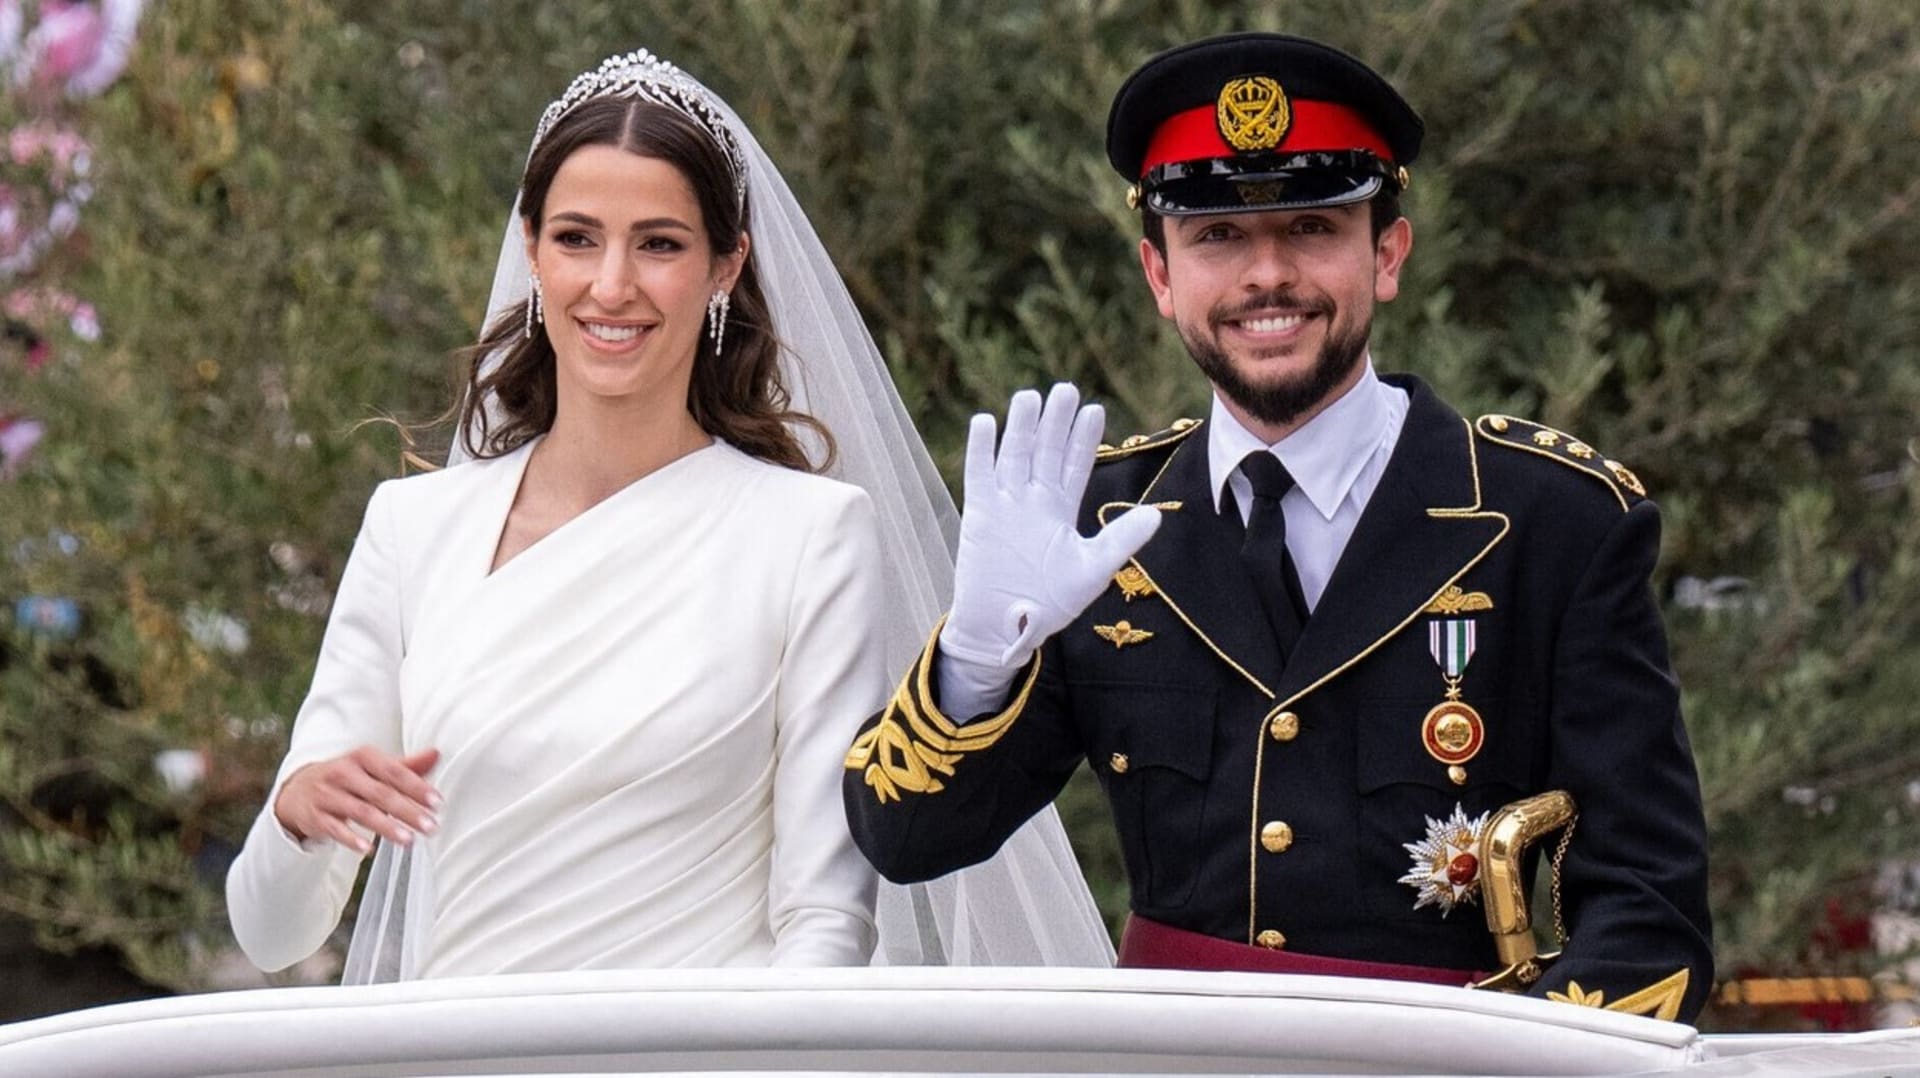 Korunní princ Jordánska se svou ženou